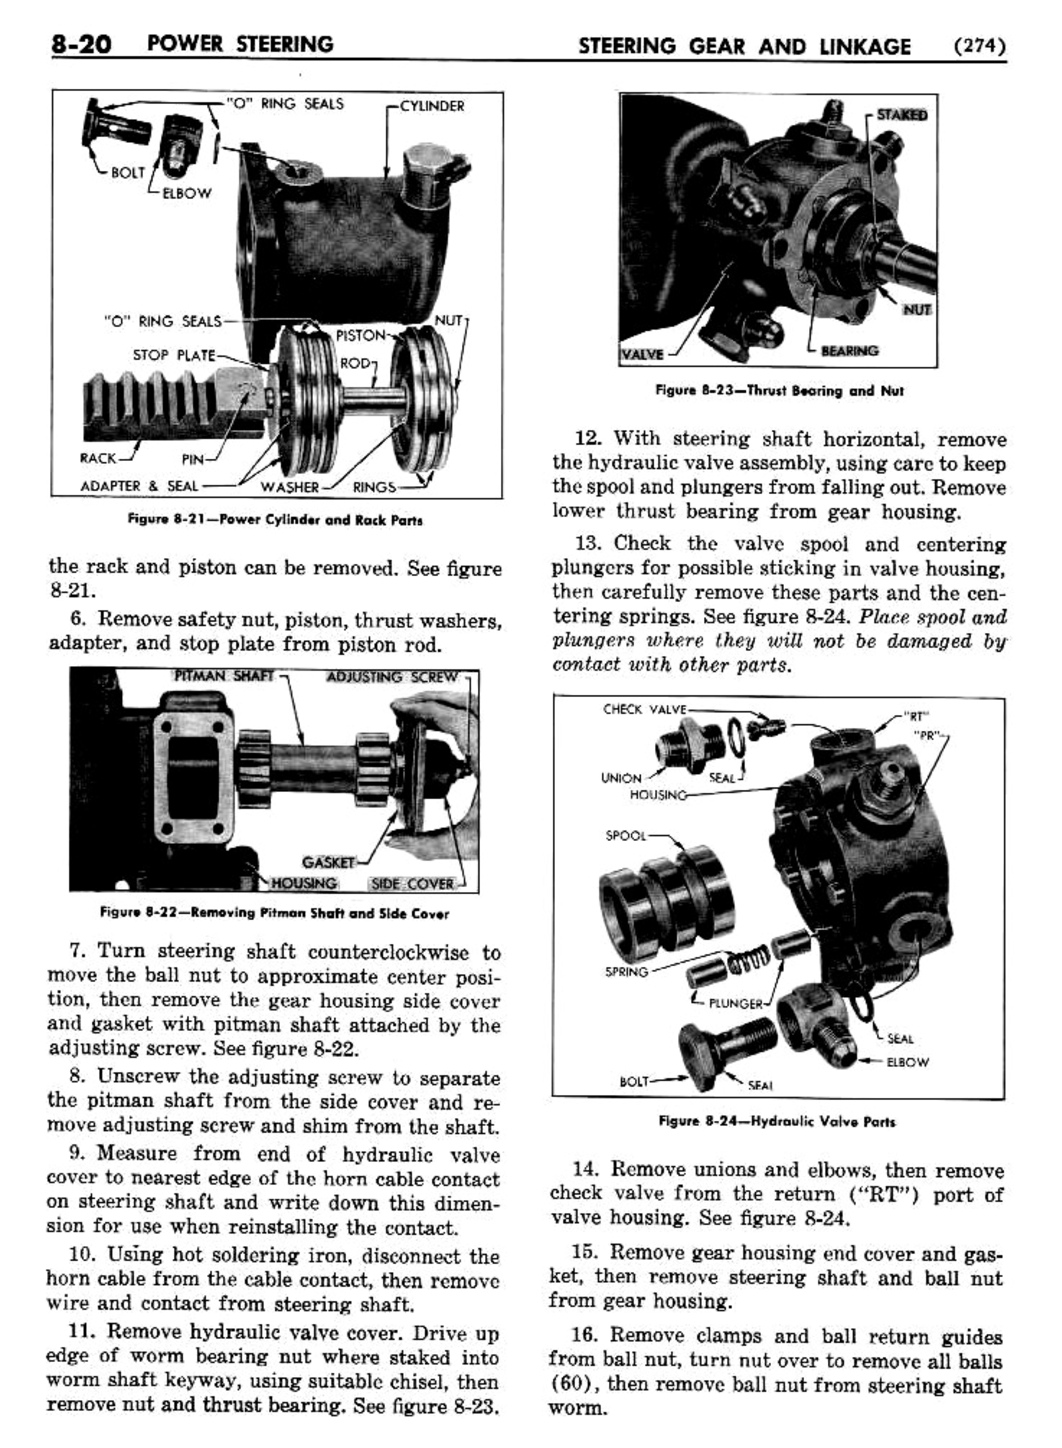 n_09 1954 Buick Shop Manual - Steering-020-020.jpg